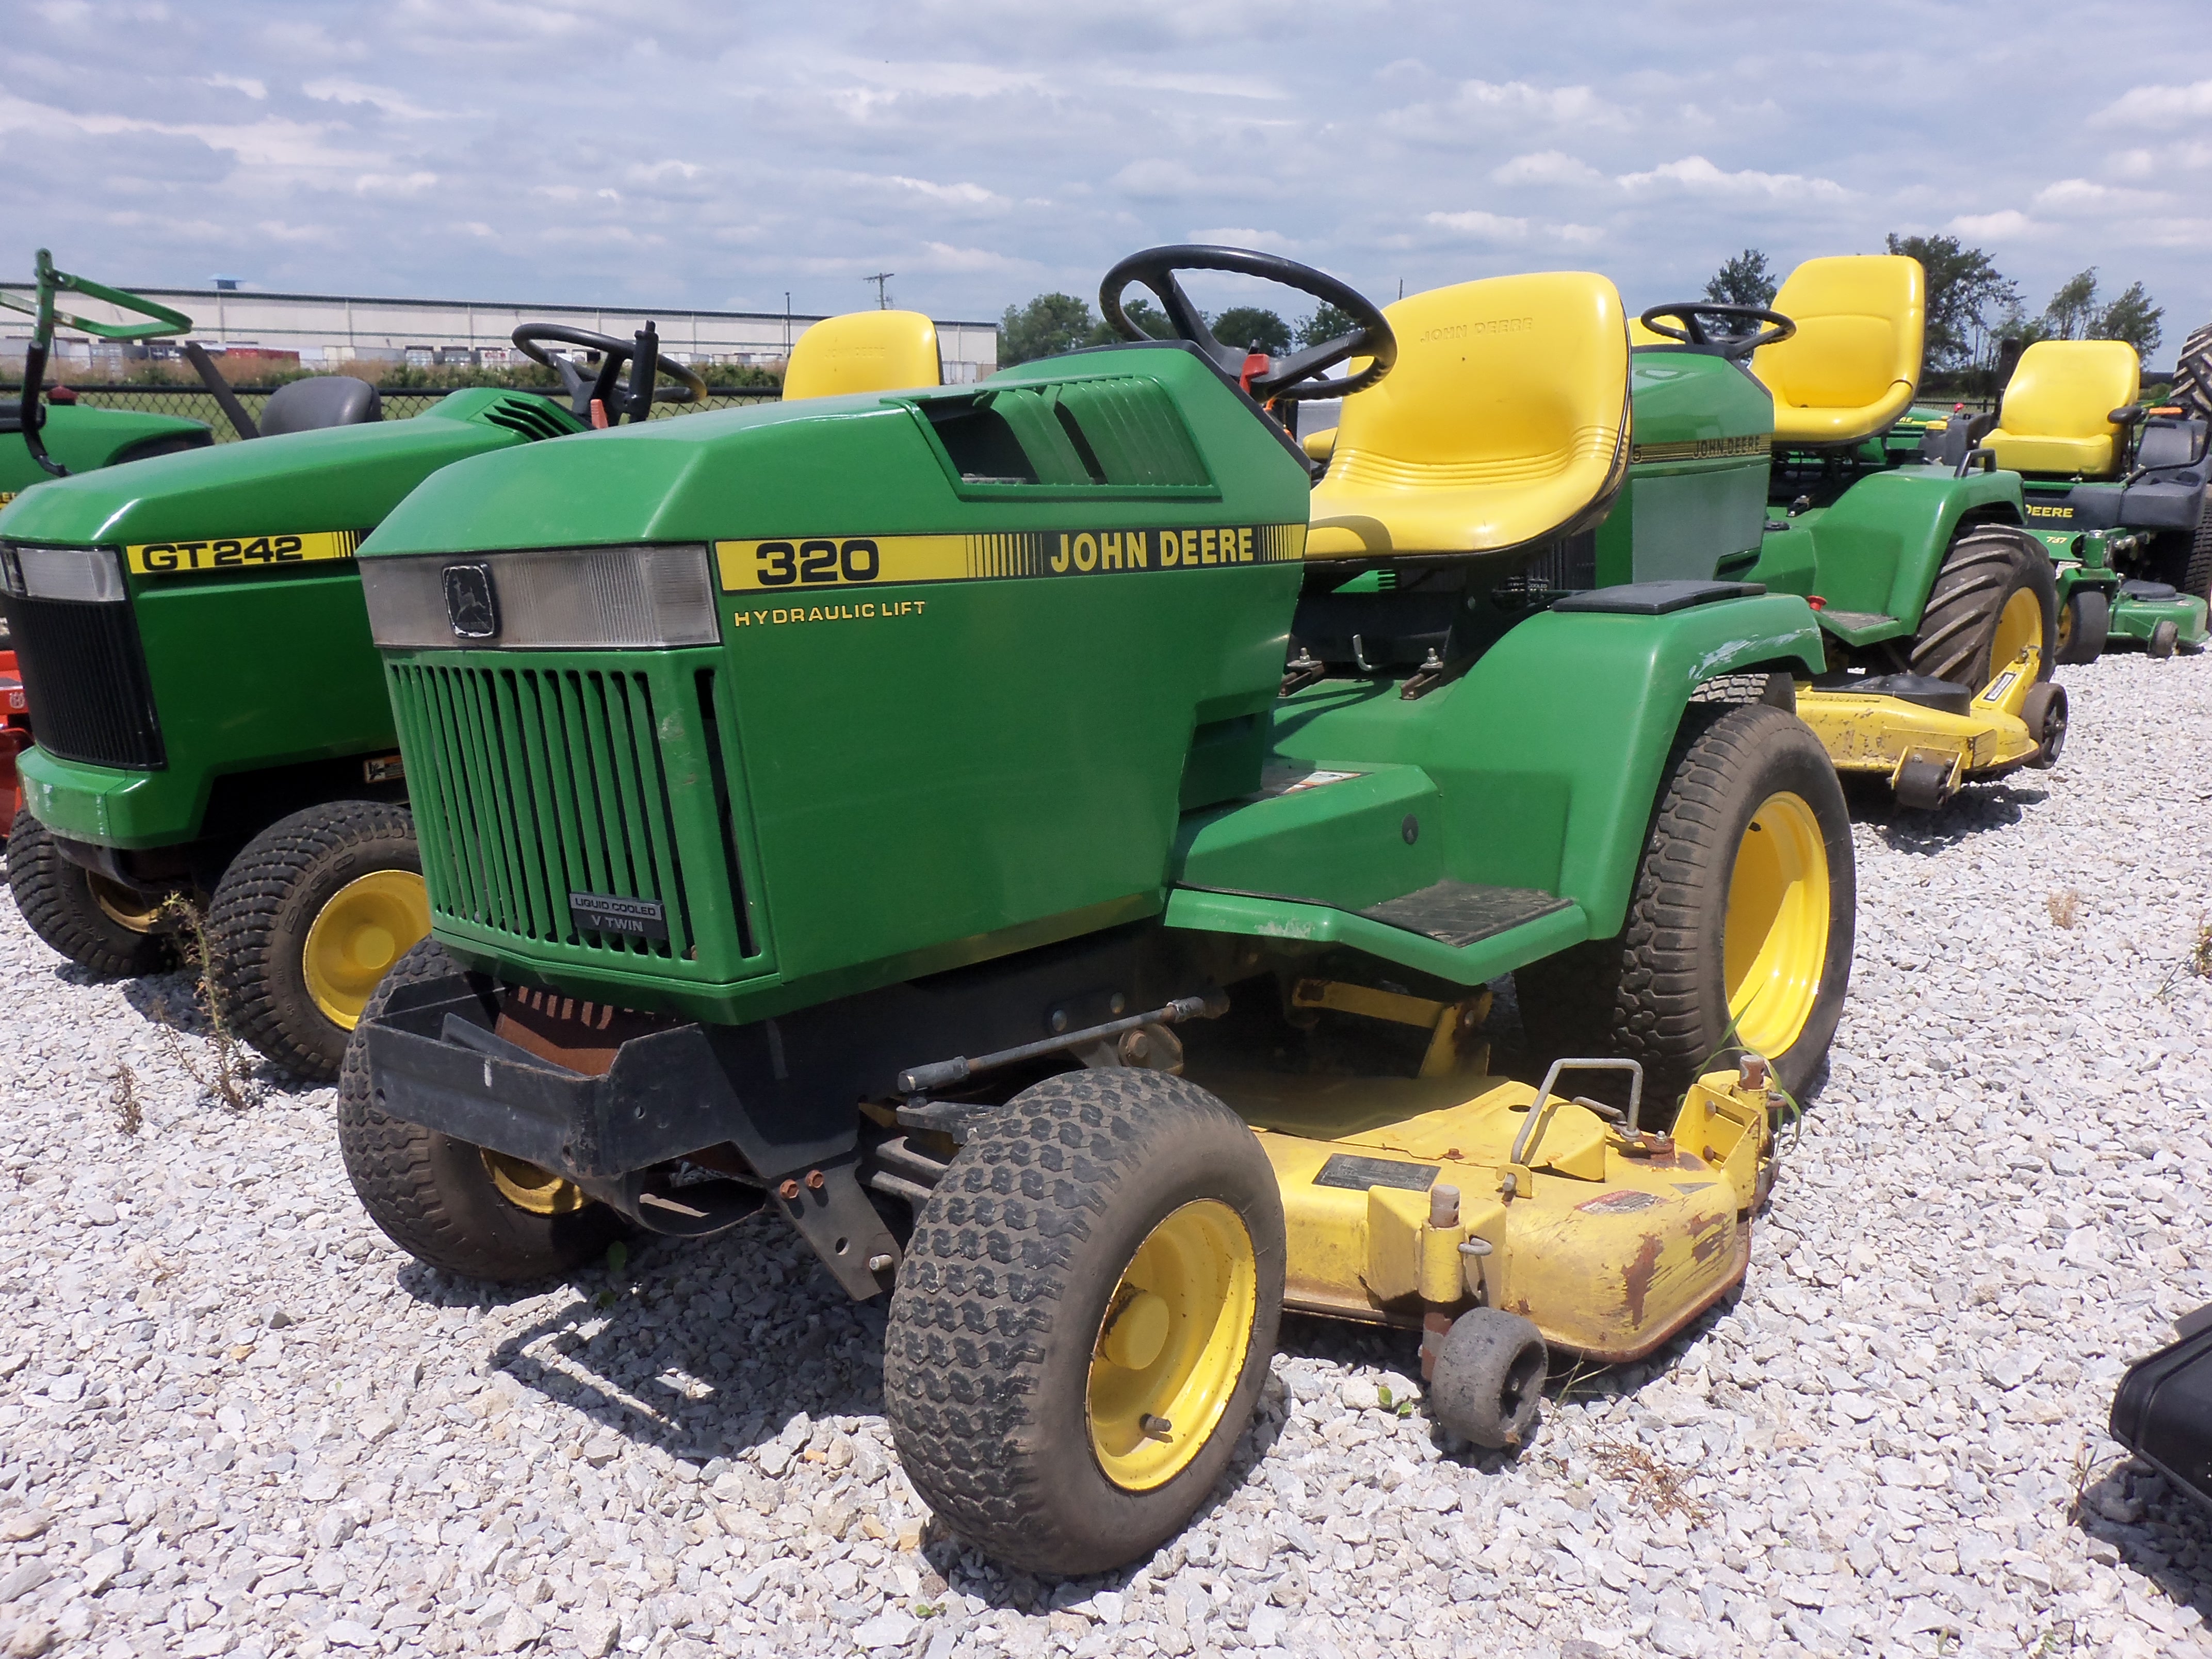 John Deere 320 lawn & garden tractor | John Deere equipment | Pinter ...